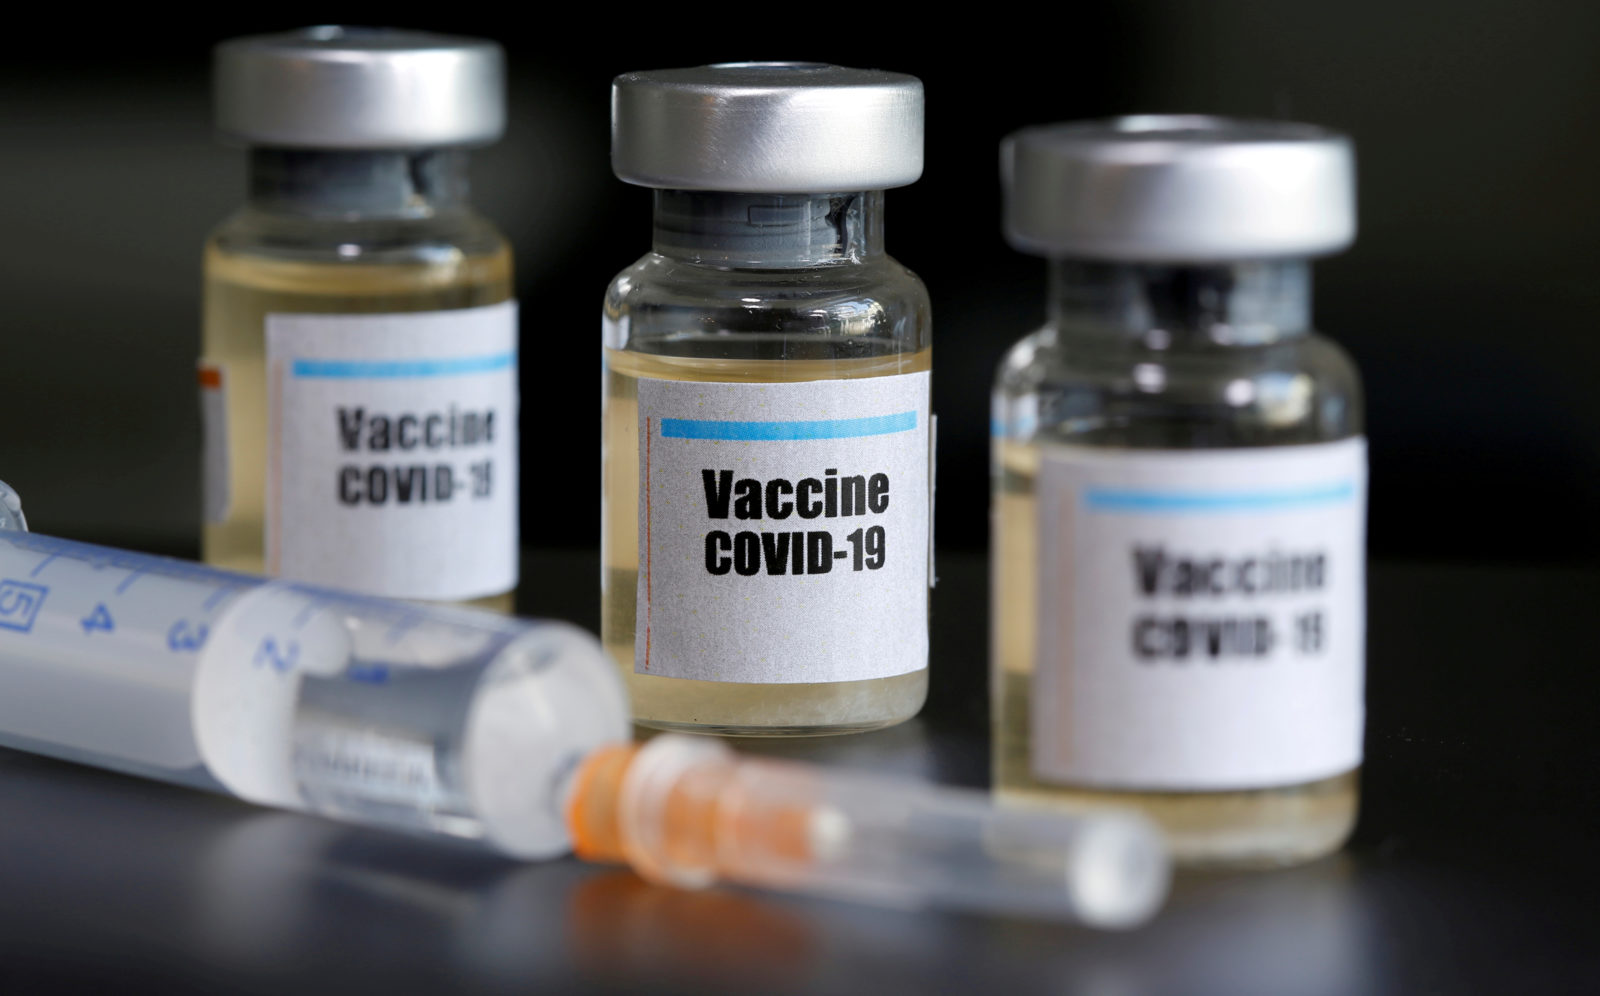 "Vaccine COVID-19"